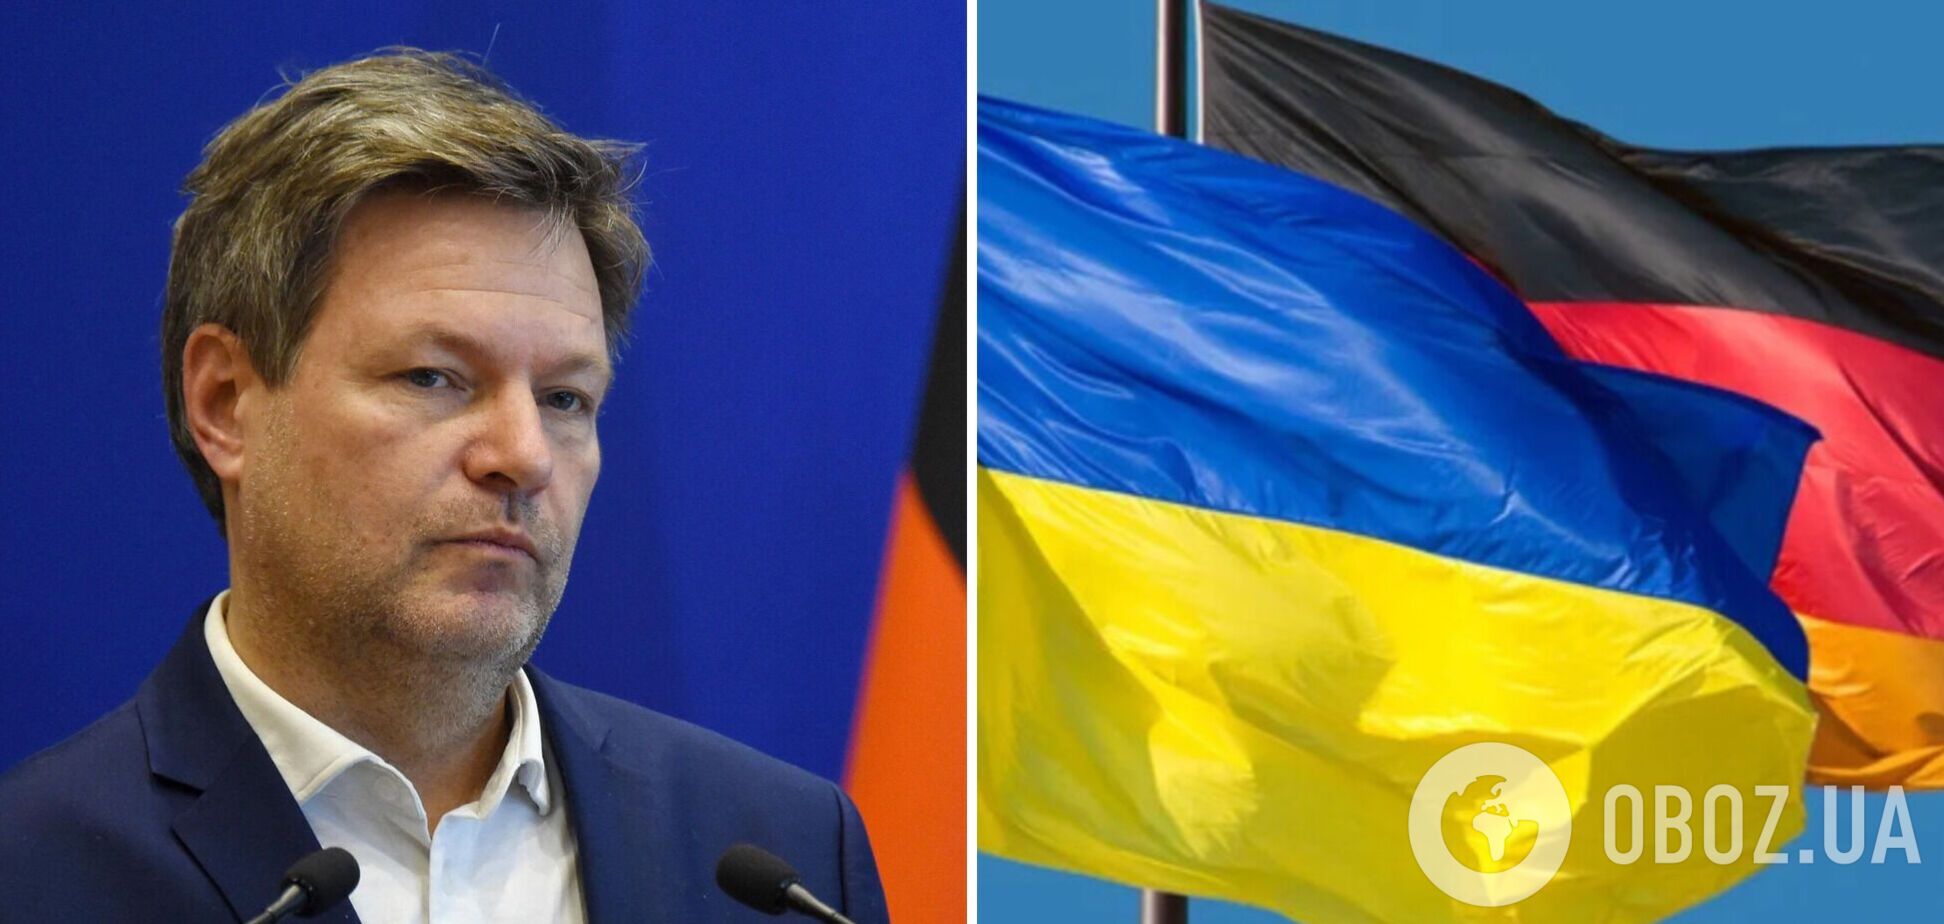 'Ми не повинні ставати учасниками війни': у Німеччині пояснили свою позицію щодо допомоги Україні